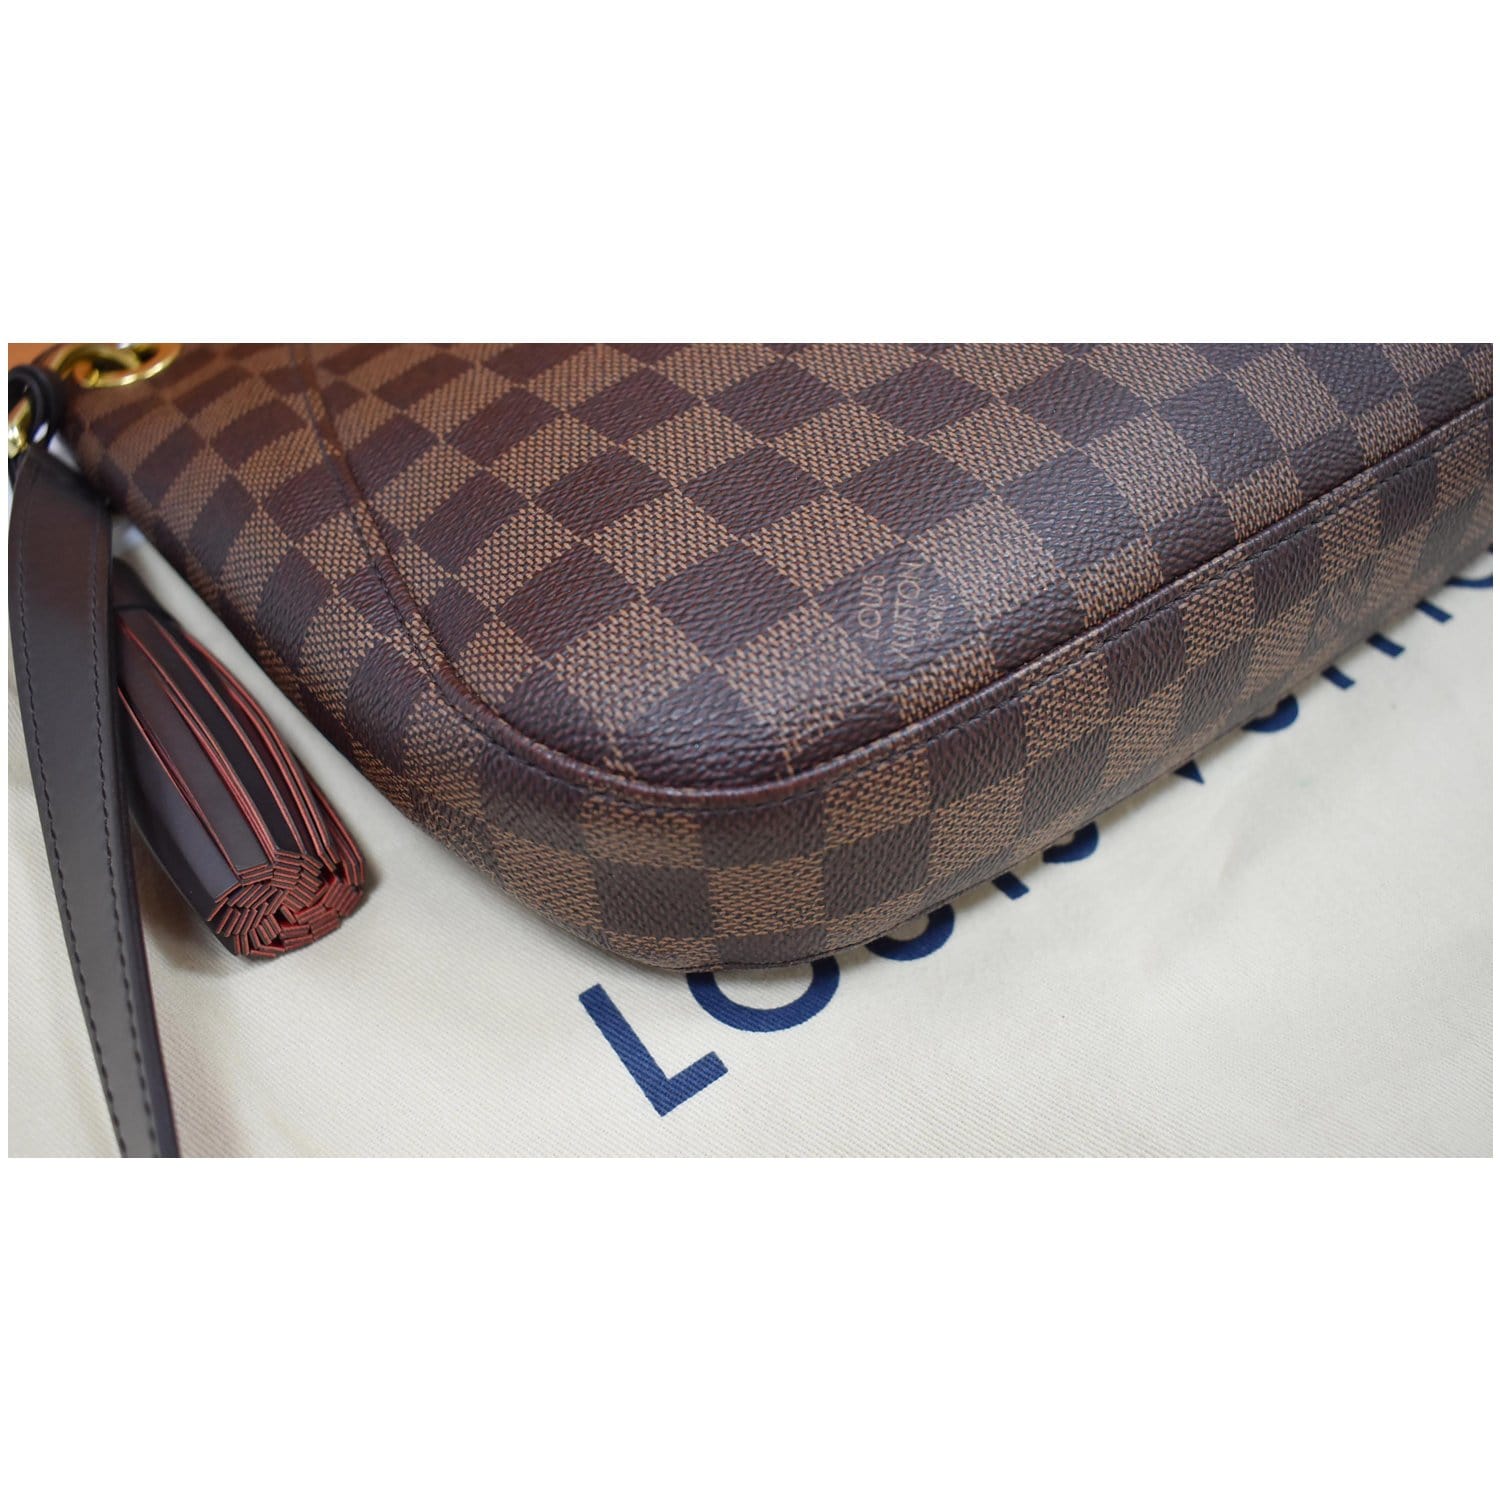 Authentic Louis Vuitton Damier Ebene South Bank Besace Bag Messenger B –  Paris Station Shop